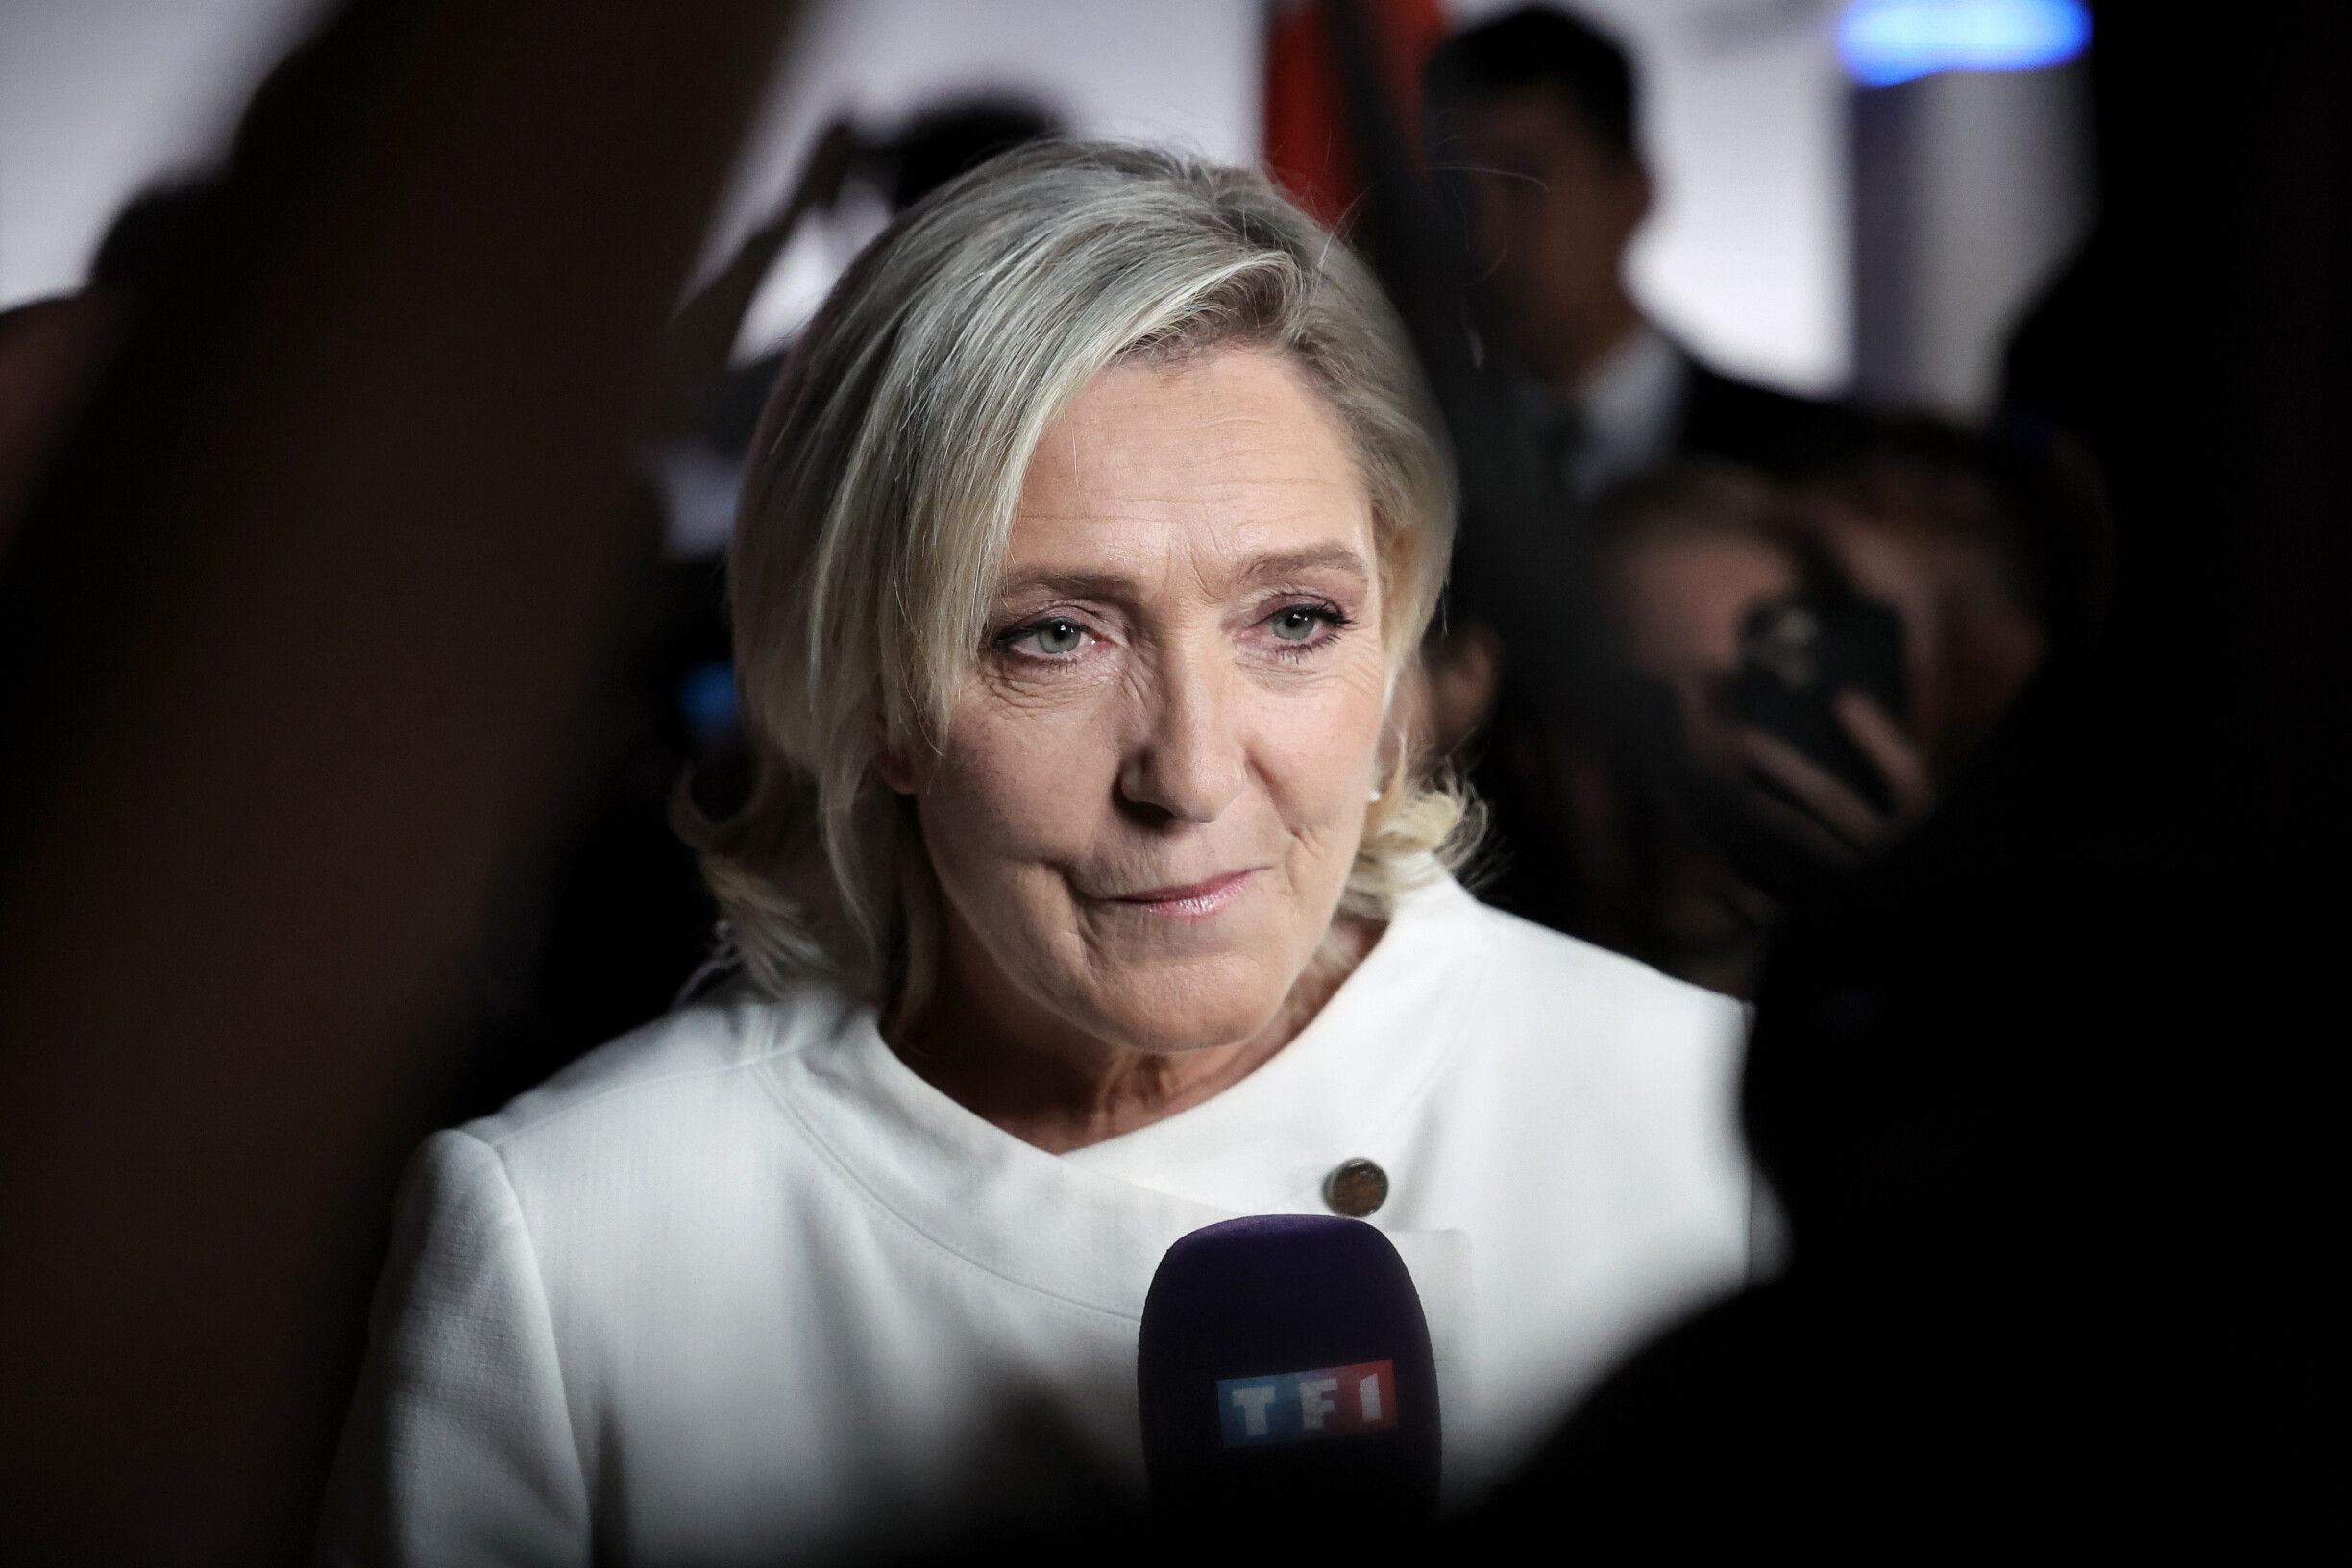 Frankreich.  Le Pens Präsidentschaftswahlkampf wurde wegen illegaler Finanzierung untersucht